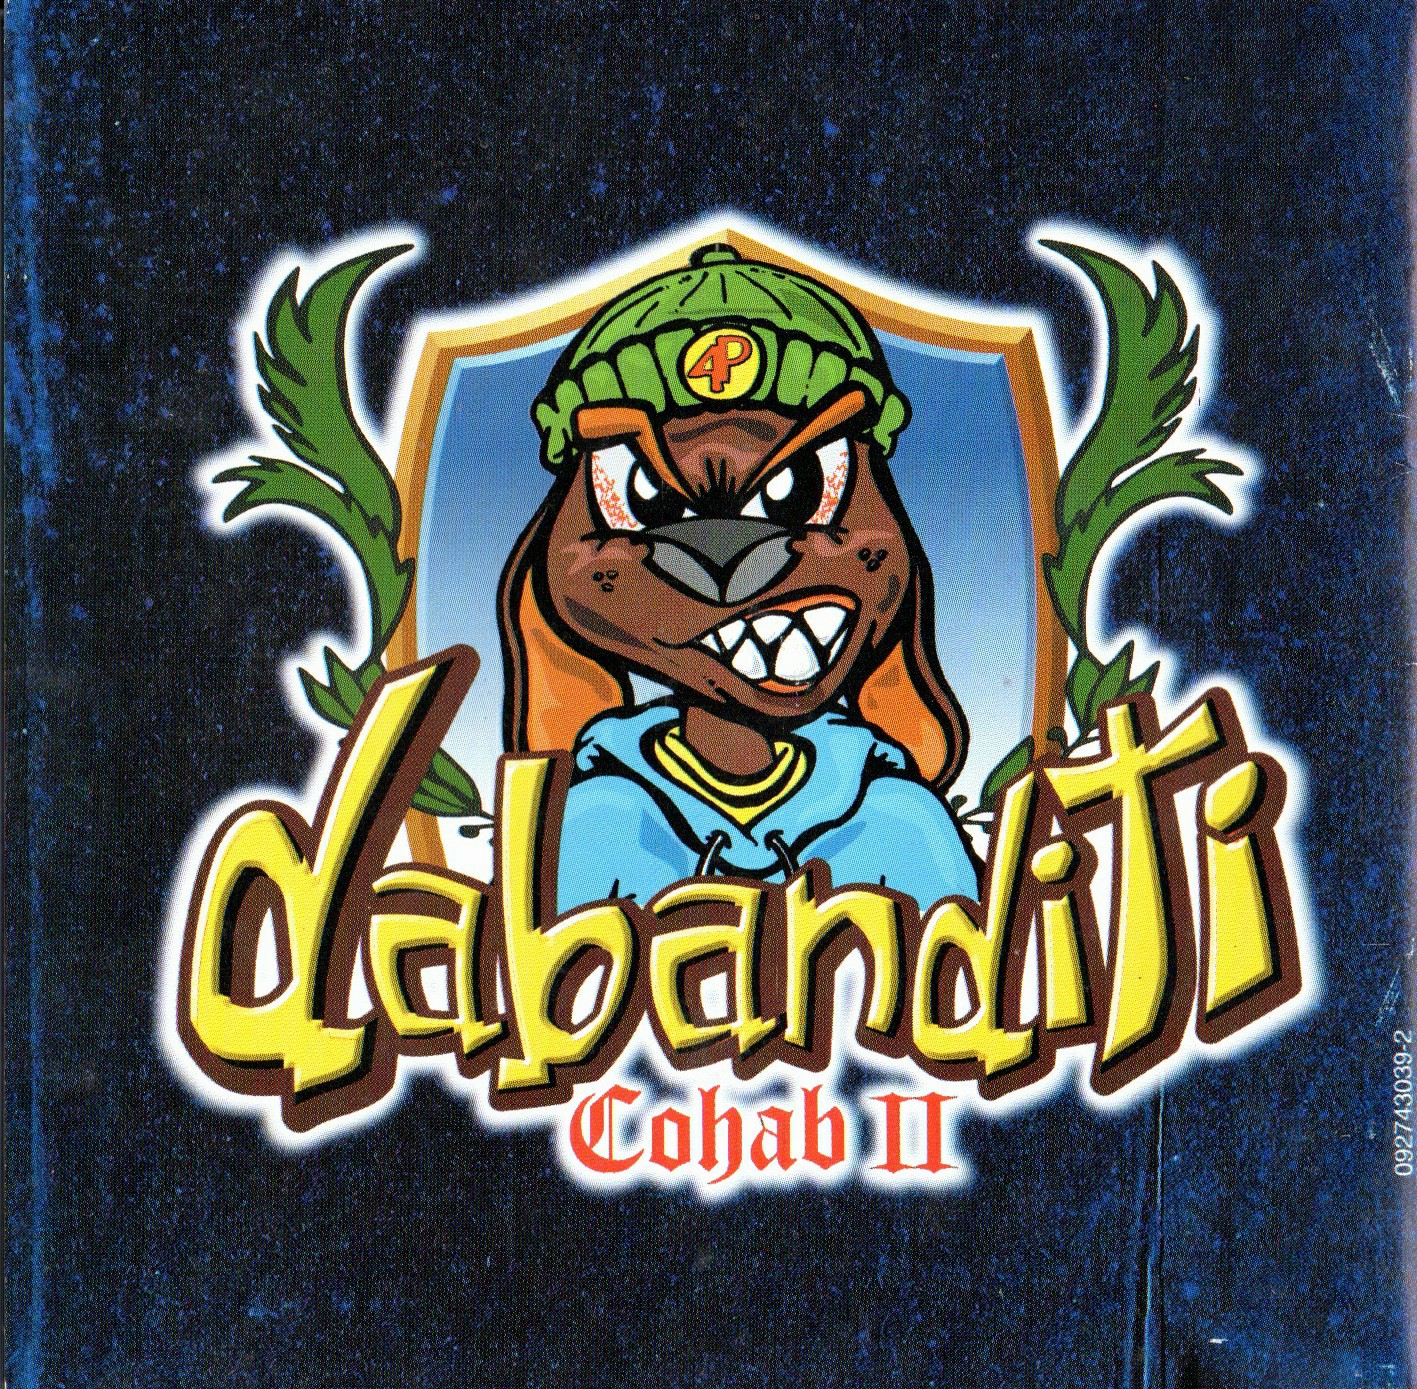 DABANDITI COHAB II